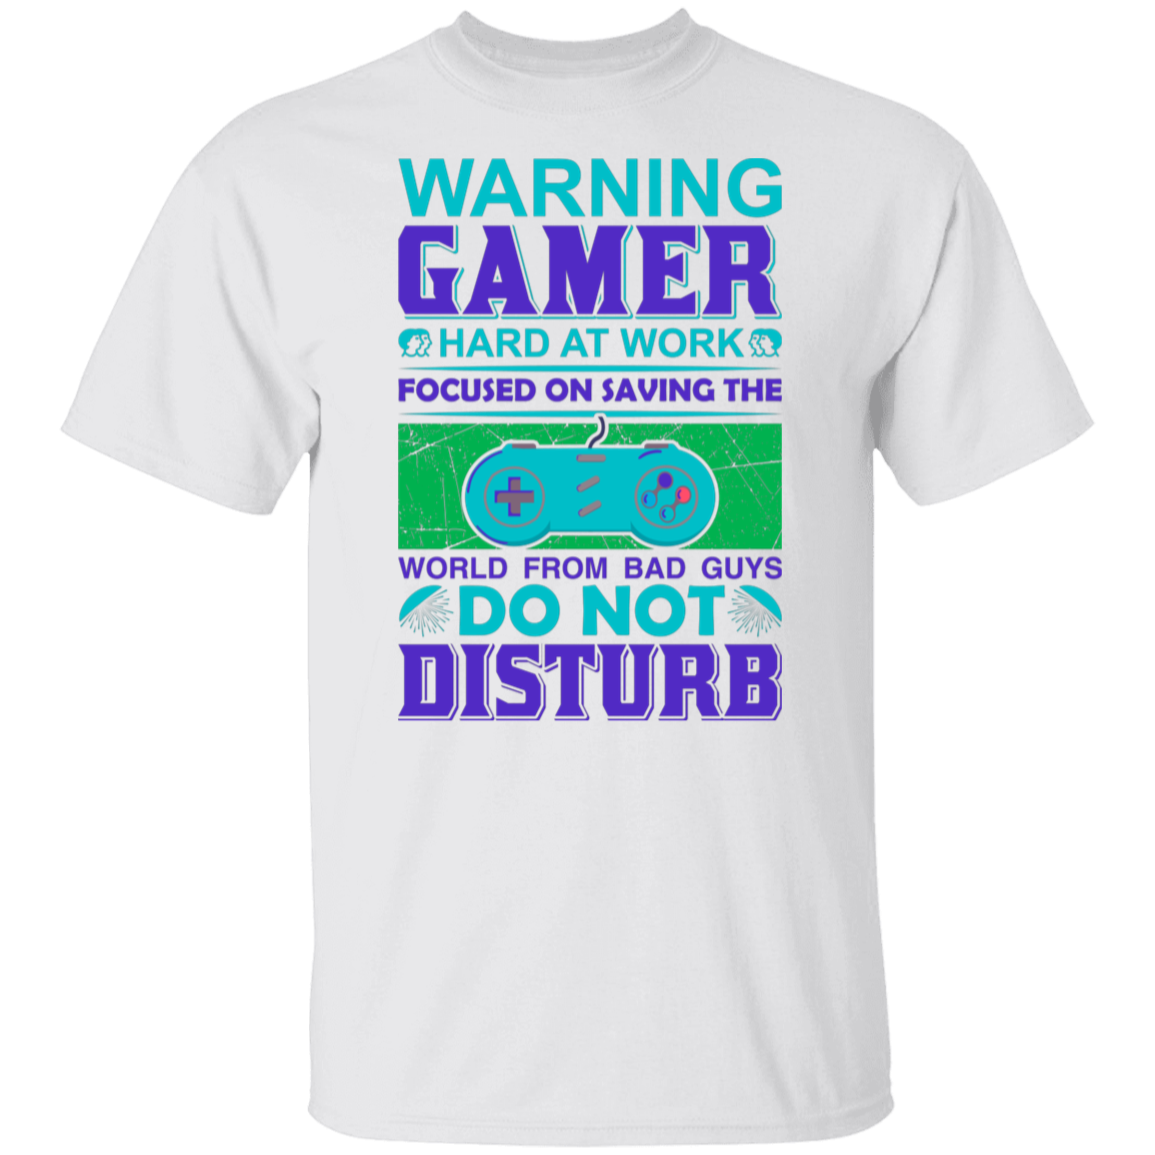 Warning Gamer at Work